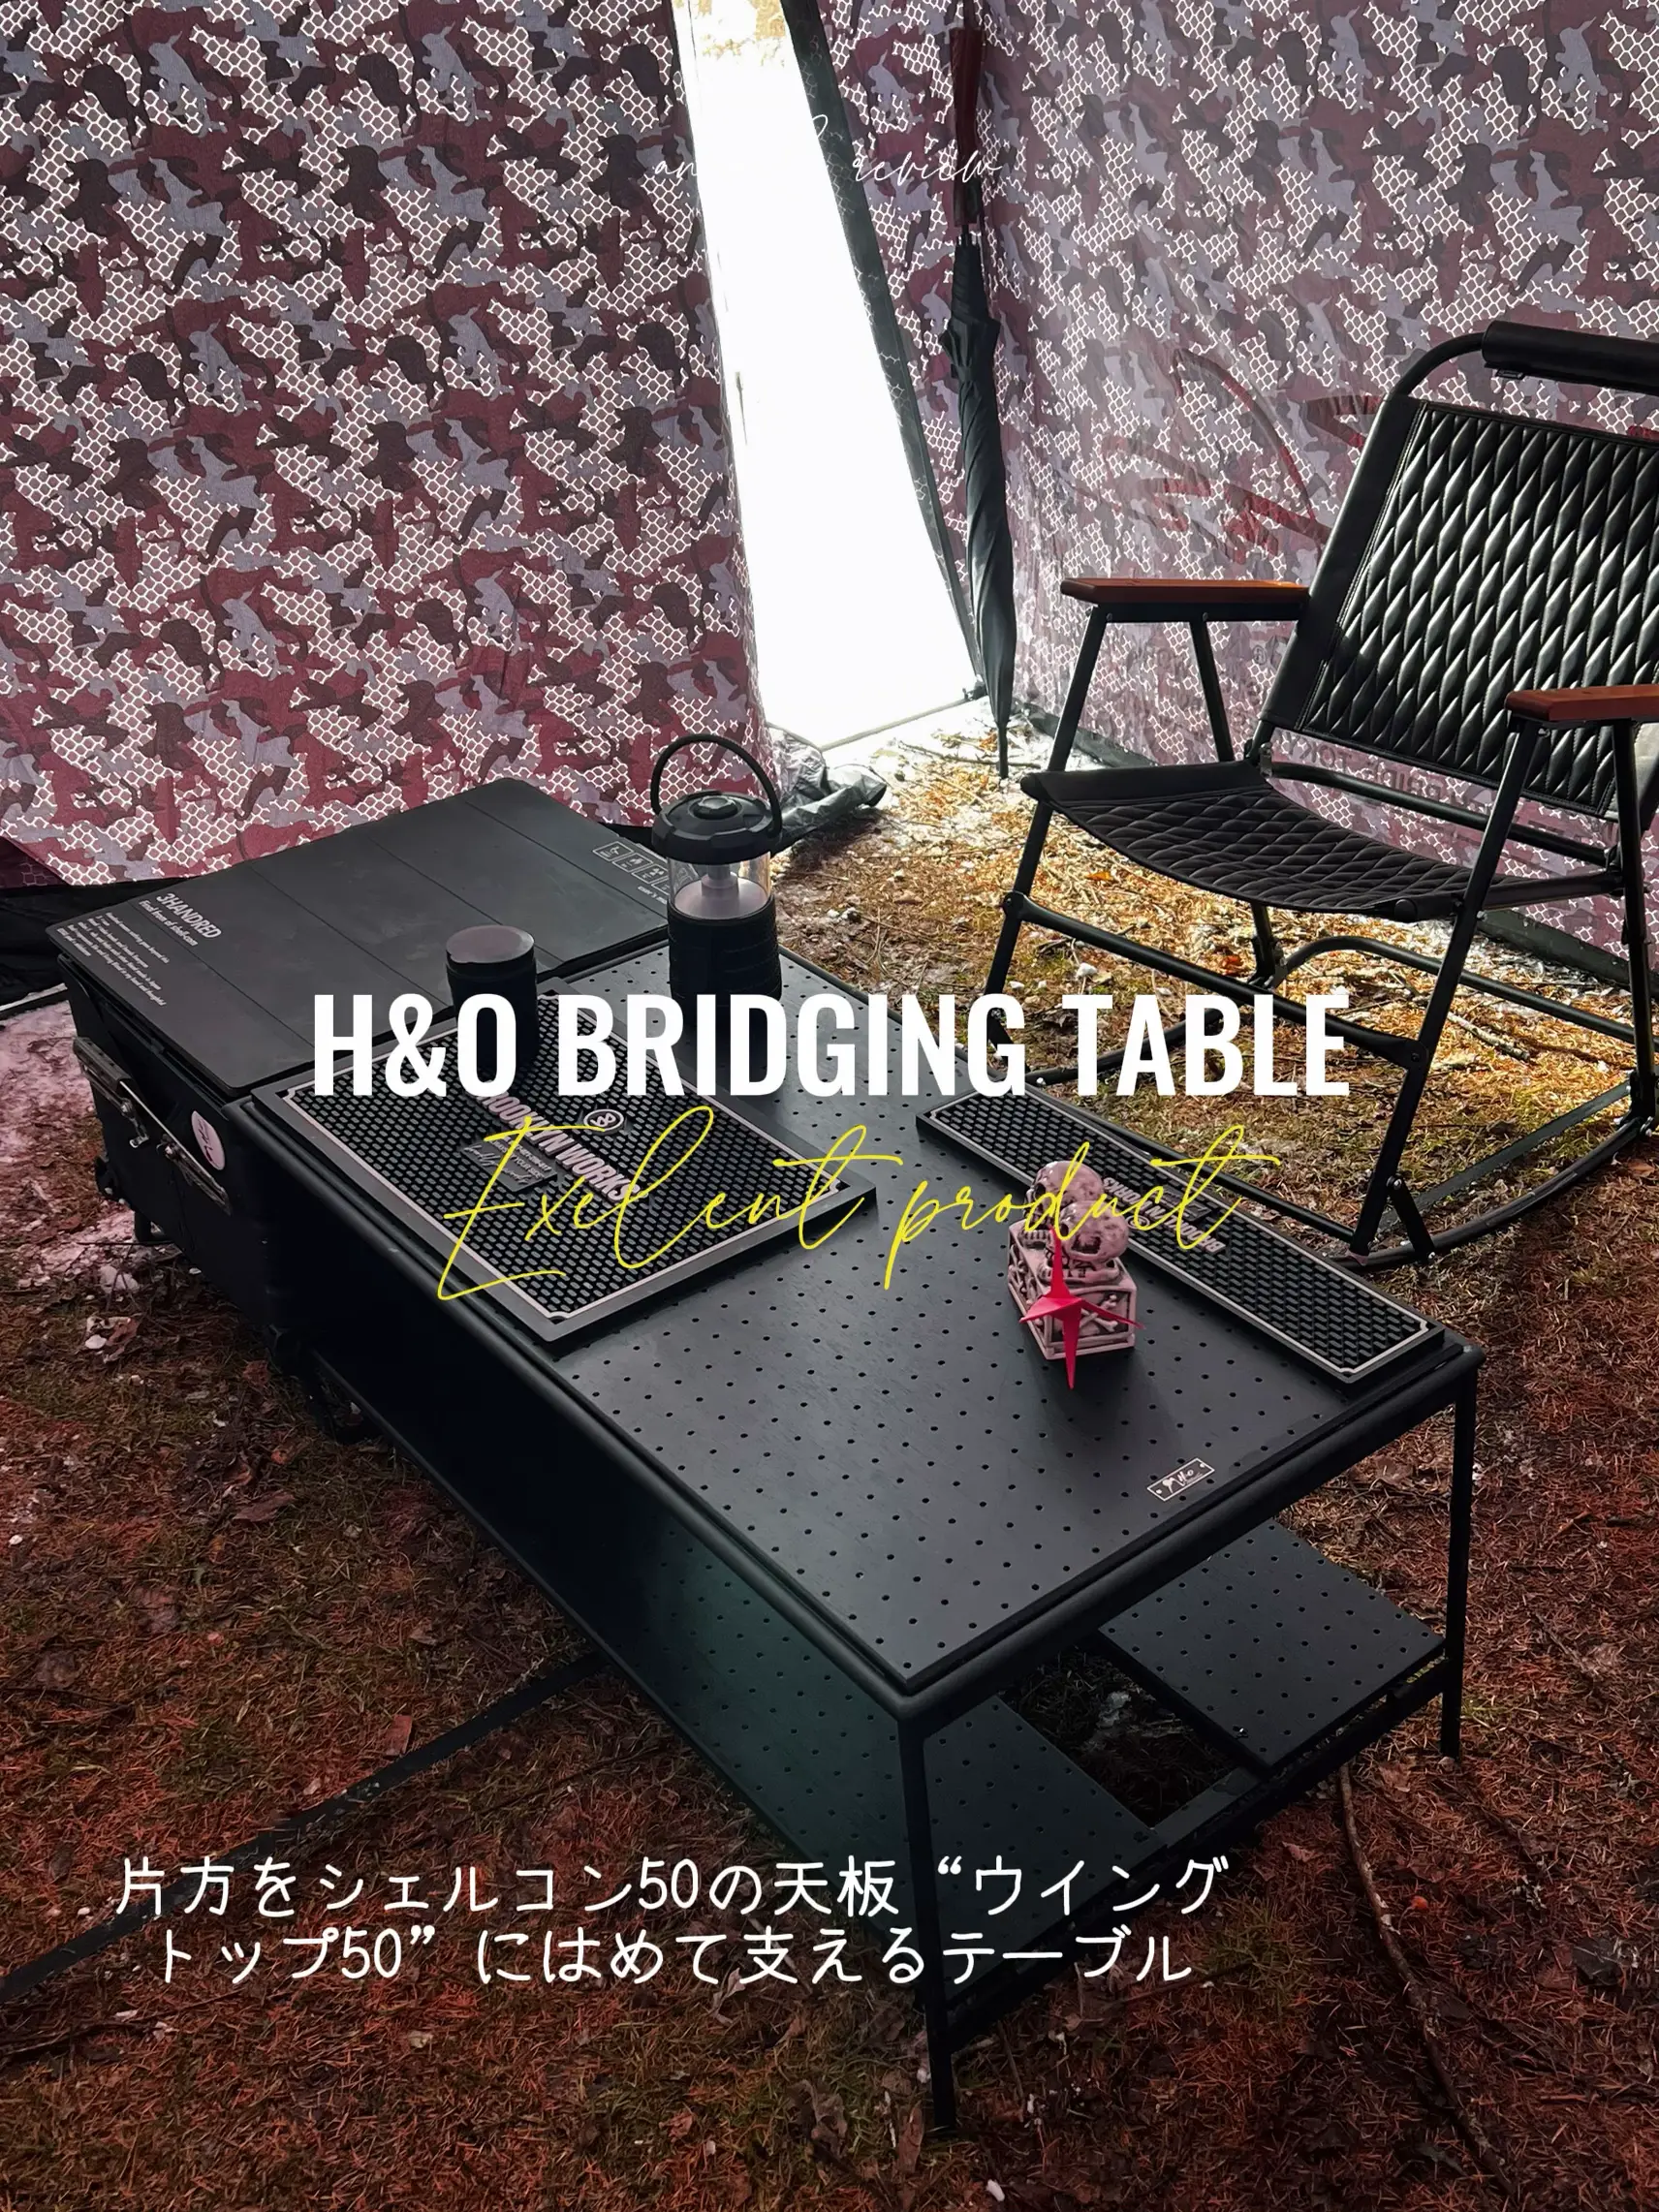 厳選キャンプギア】H&O ブリッジテーブル システム | とっぴーが投稿